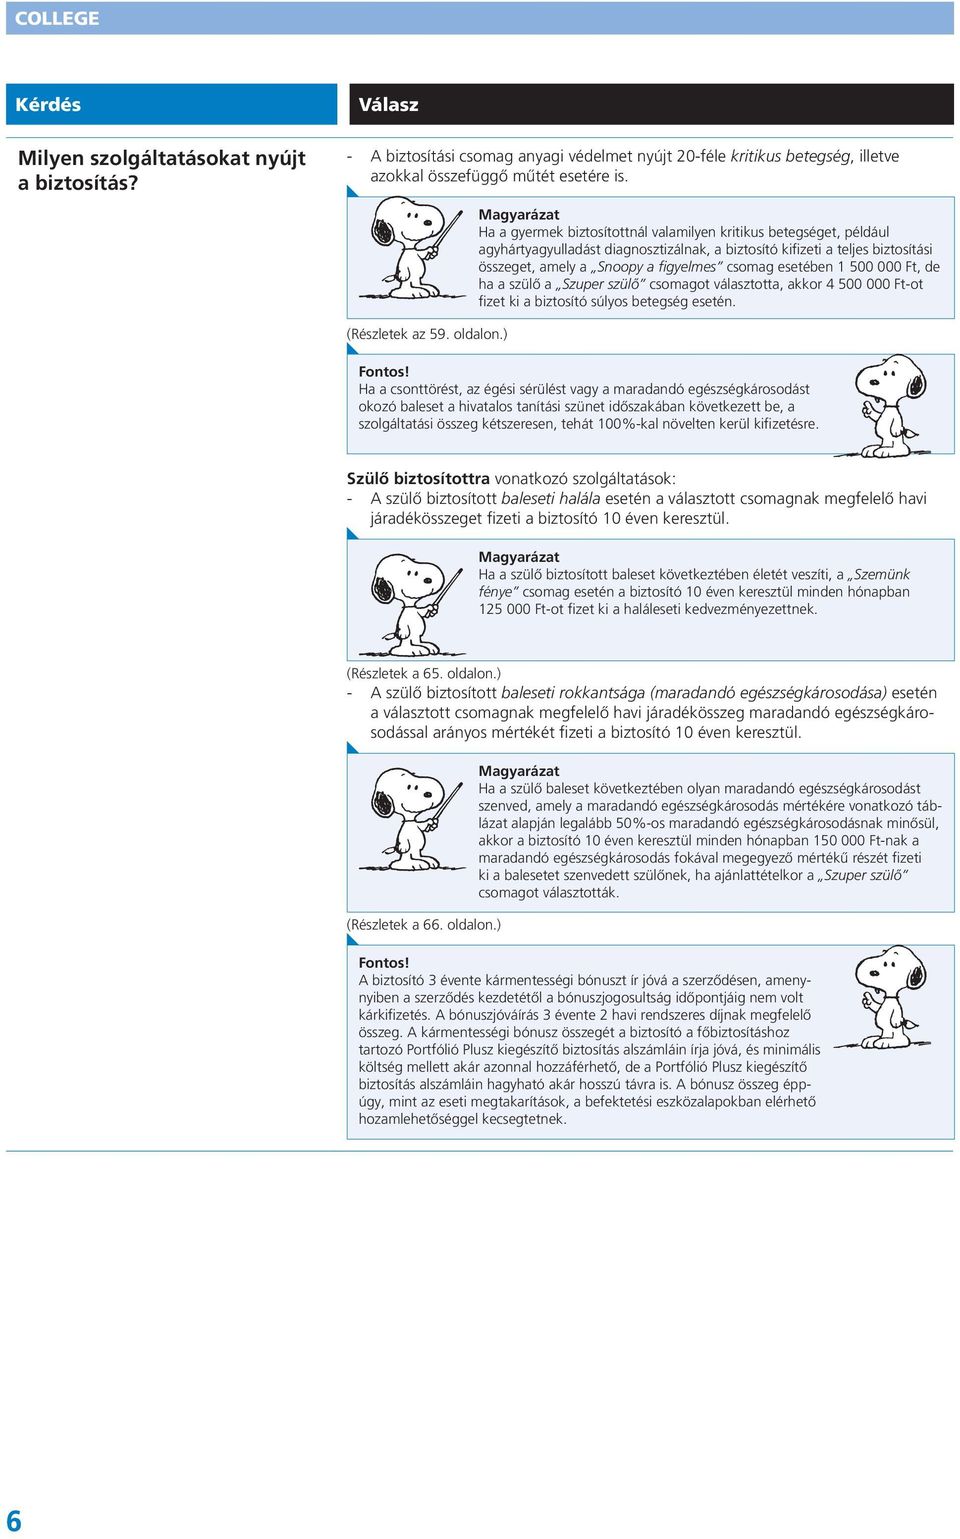 ) Magyarázat Ha a gyermek biztosítottnál valamilyen kritikus betegséget, például agyhártyagyulladást diagnosztizálnak, a biztosító kifizeti a teljes biztosítási összeget, amely a Snoopy a figyelmes